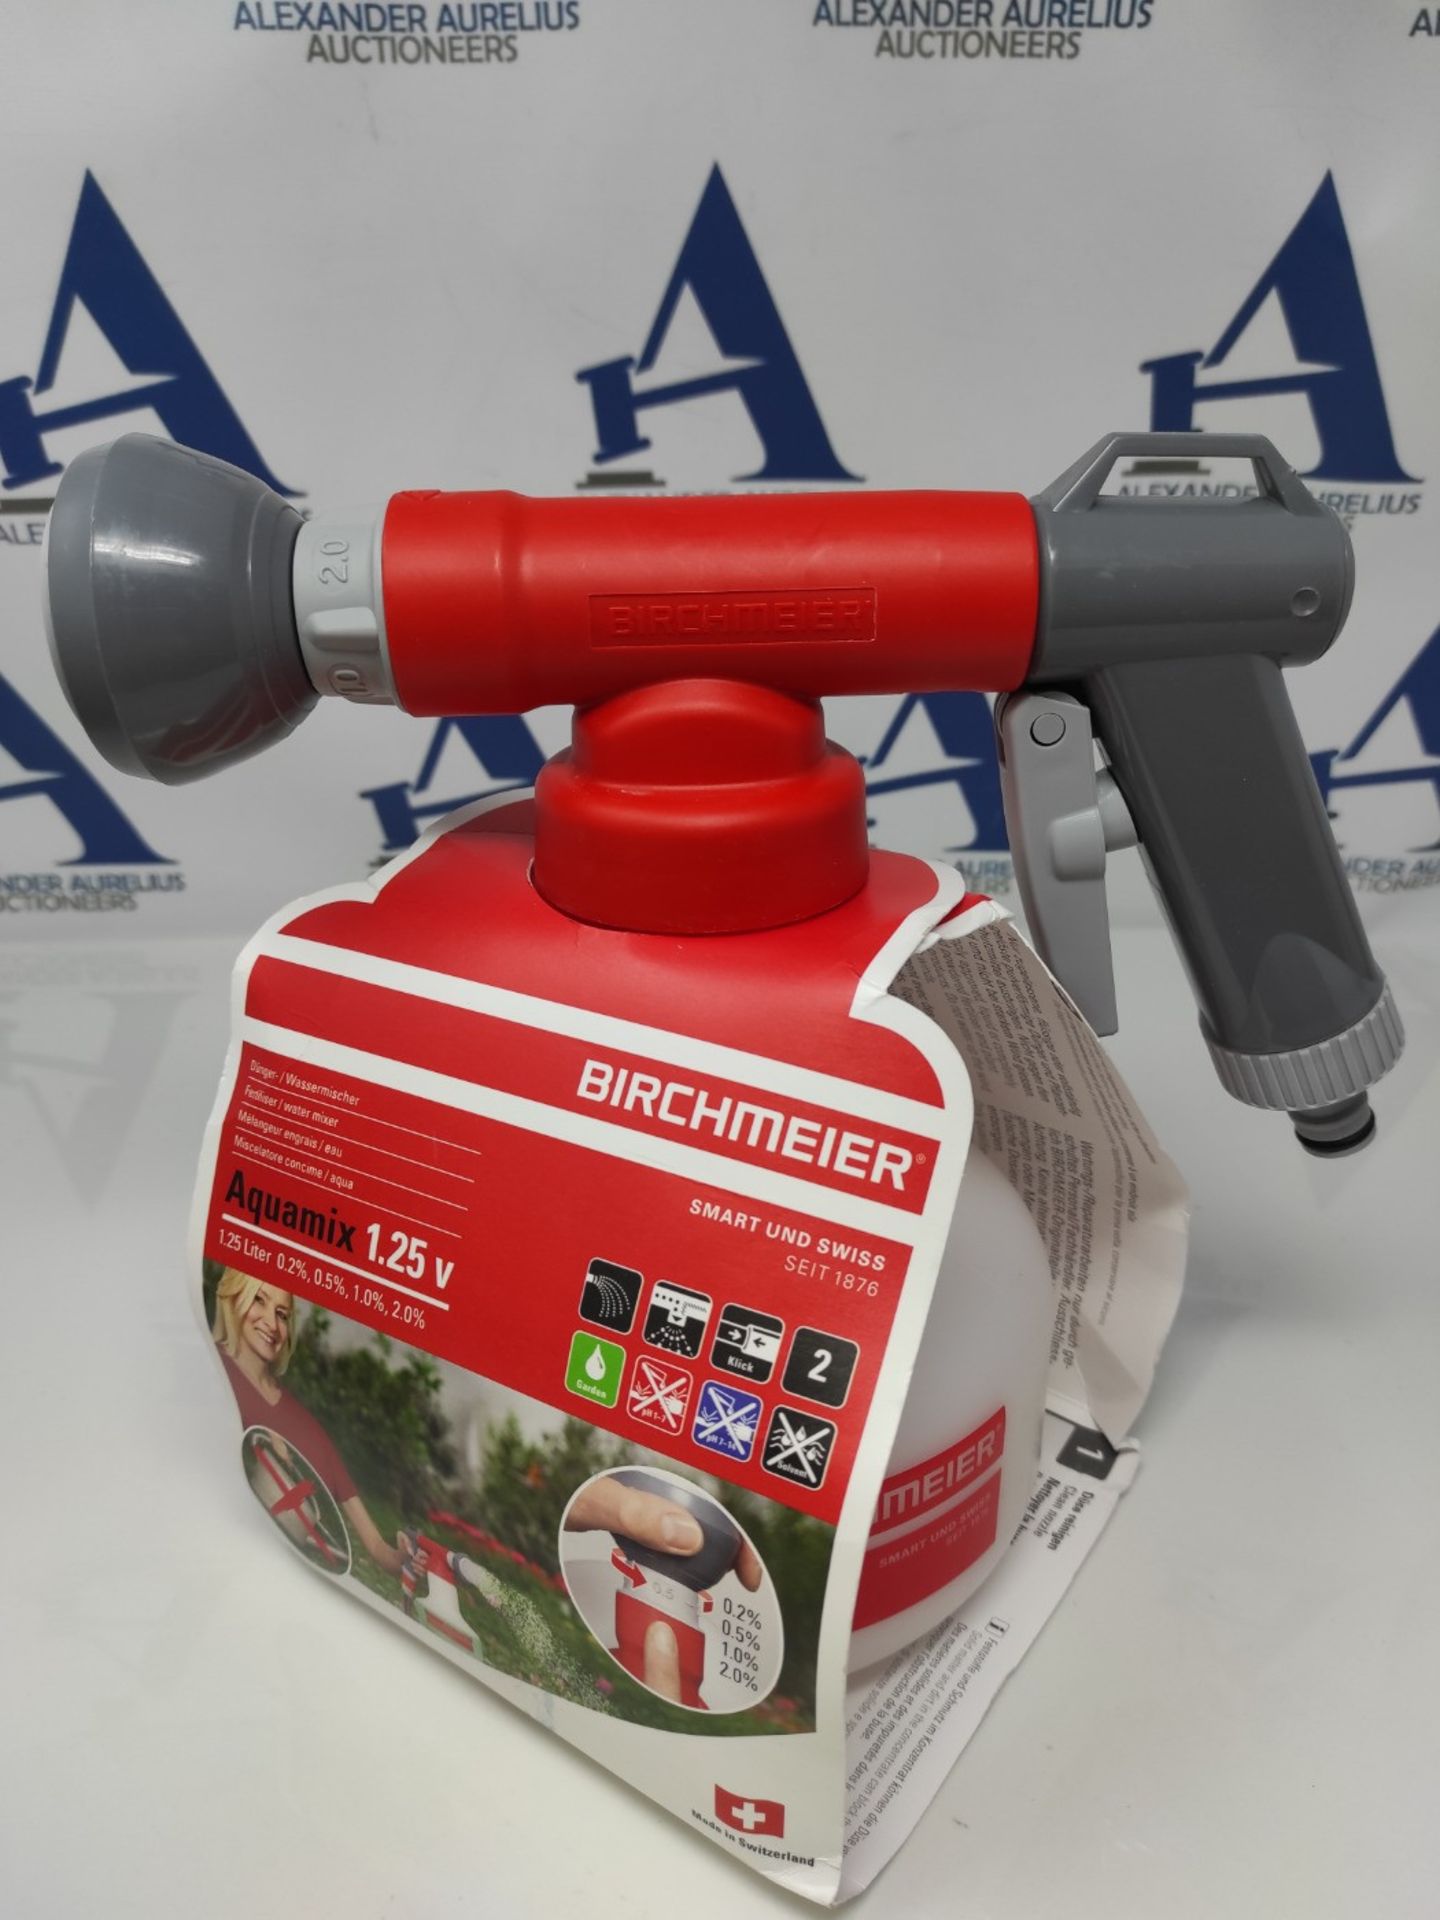 [NEW] Birchmeier Aquamix 1.25 V Fertilizer / Water Mixer - For precise dosing of liqui - Image 2 of 3